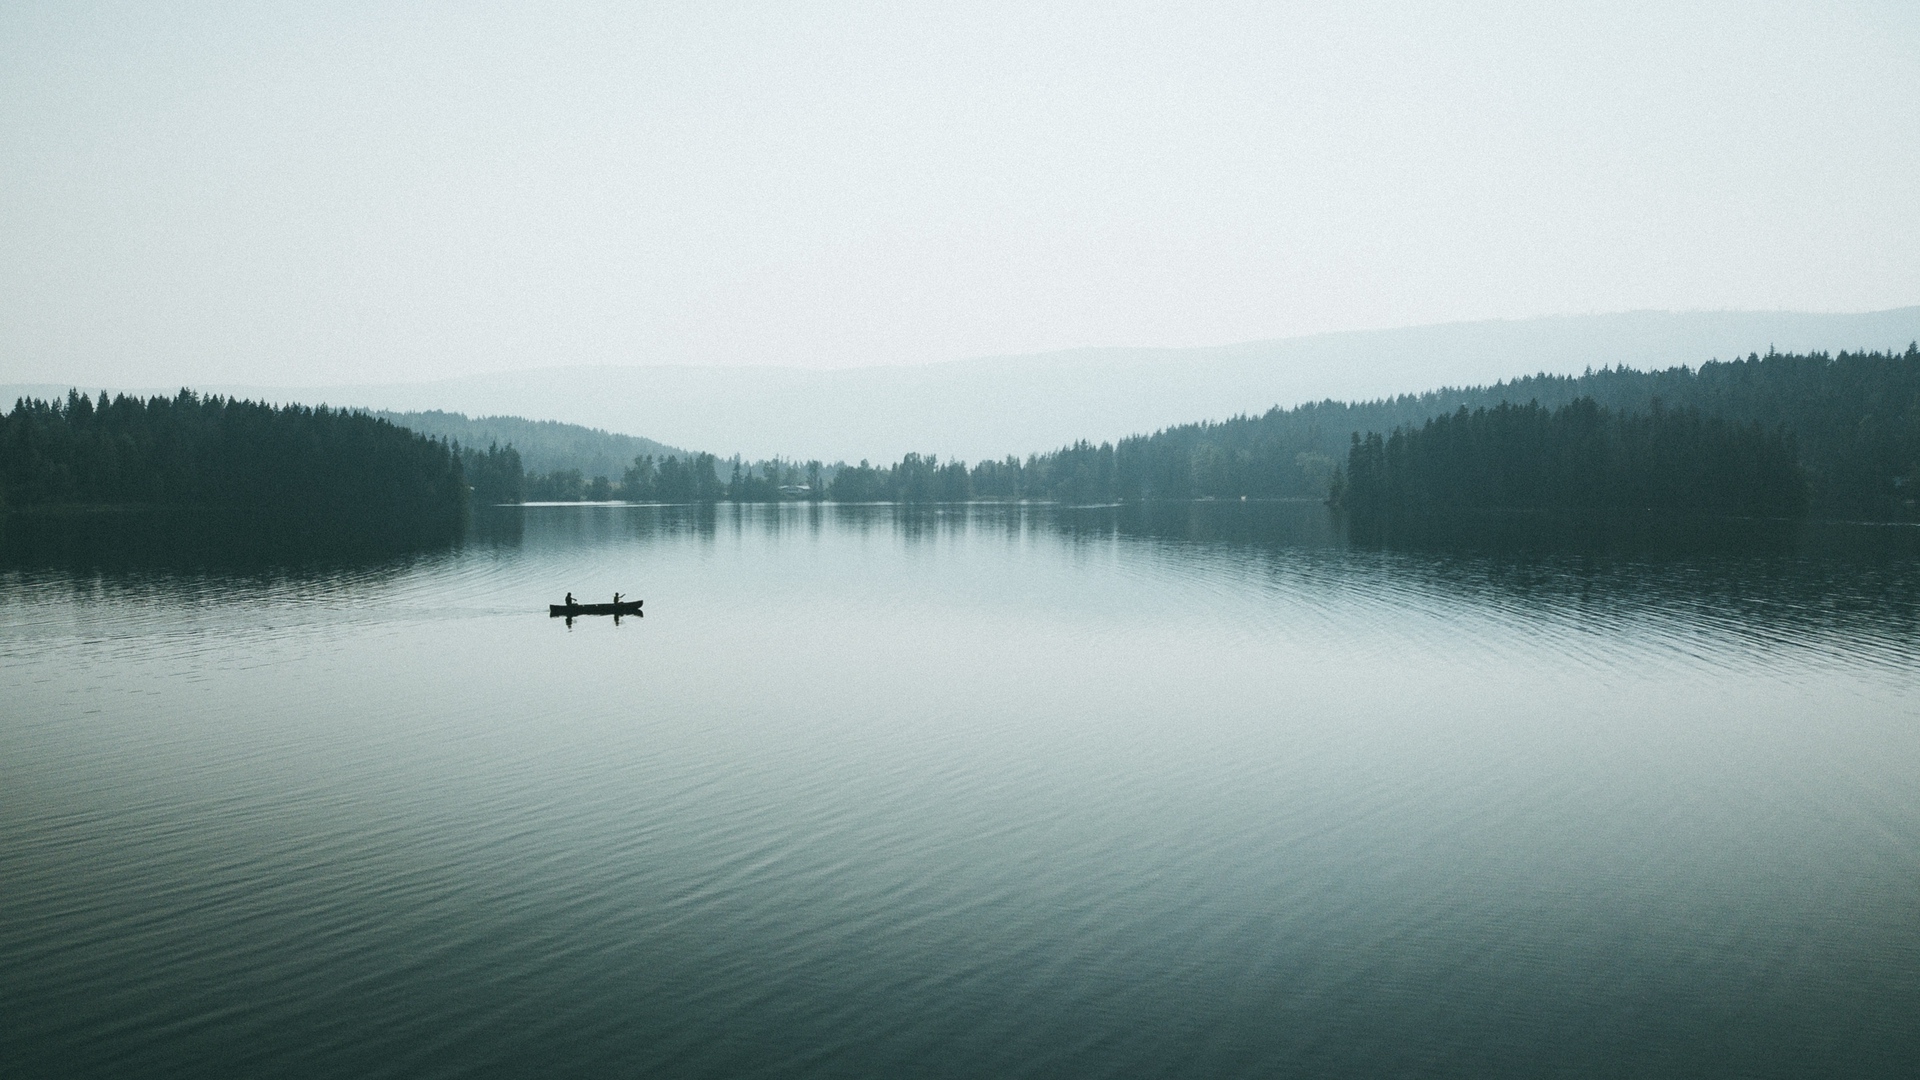 Wallpaper Canoe, Boat, Lake, Fog, Silhouettes - Loch , HD Wallpaper & Backgrounds